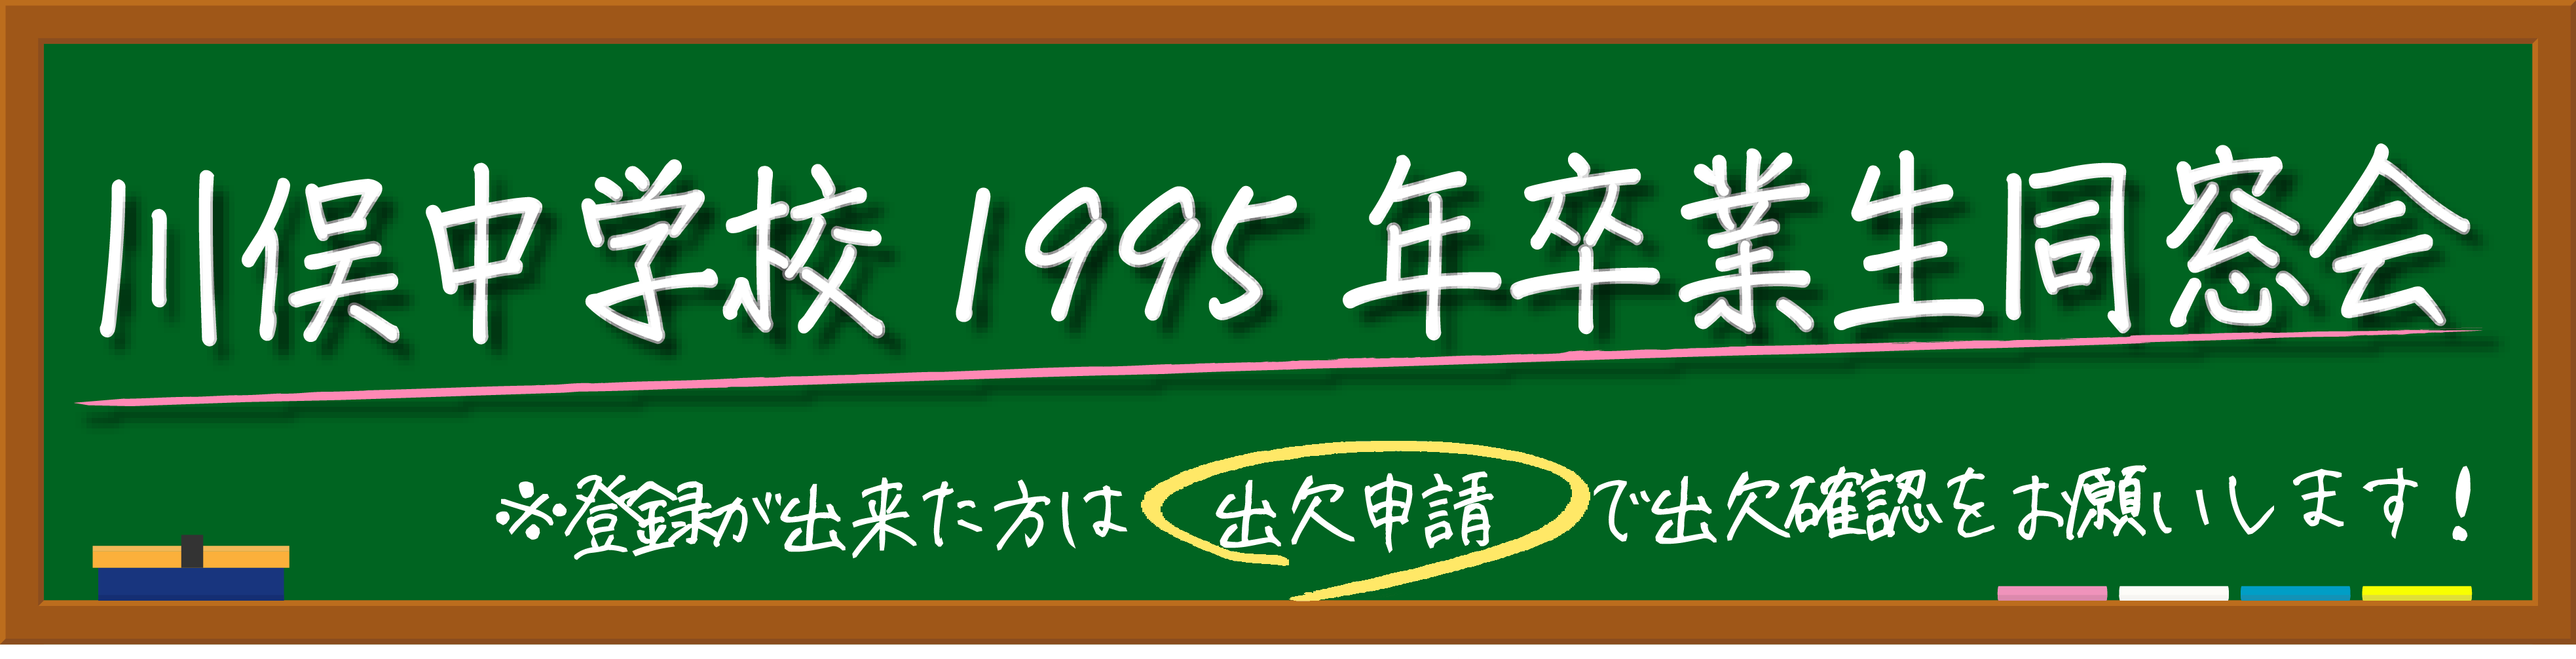 川俣町立川俣中学校1995年卒業生同窓会